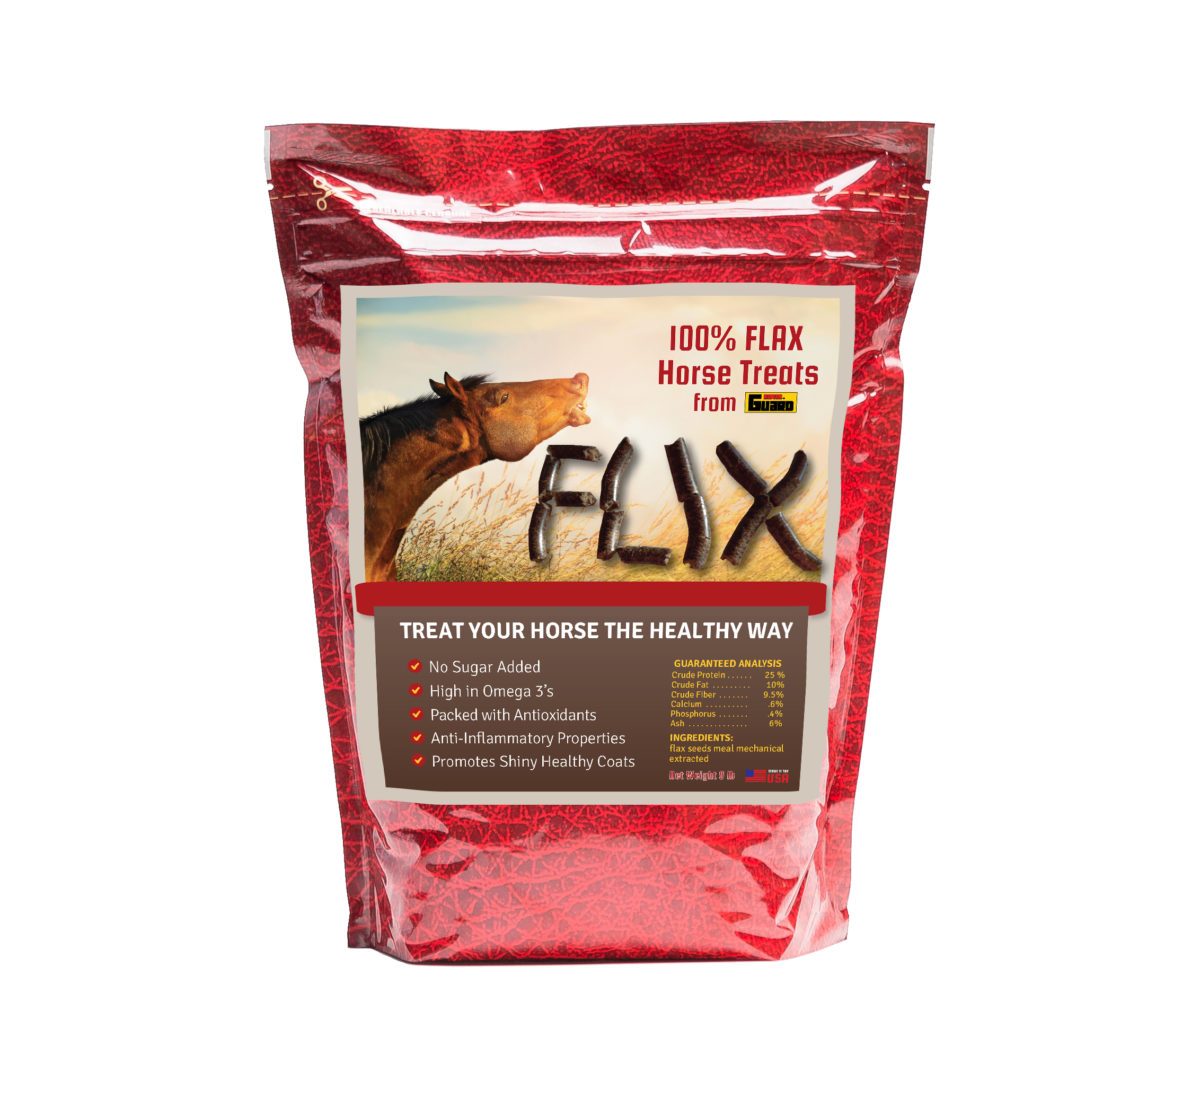 flax treats for horses